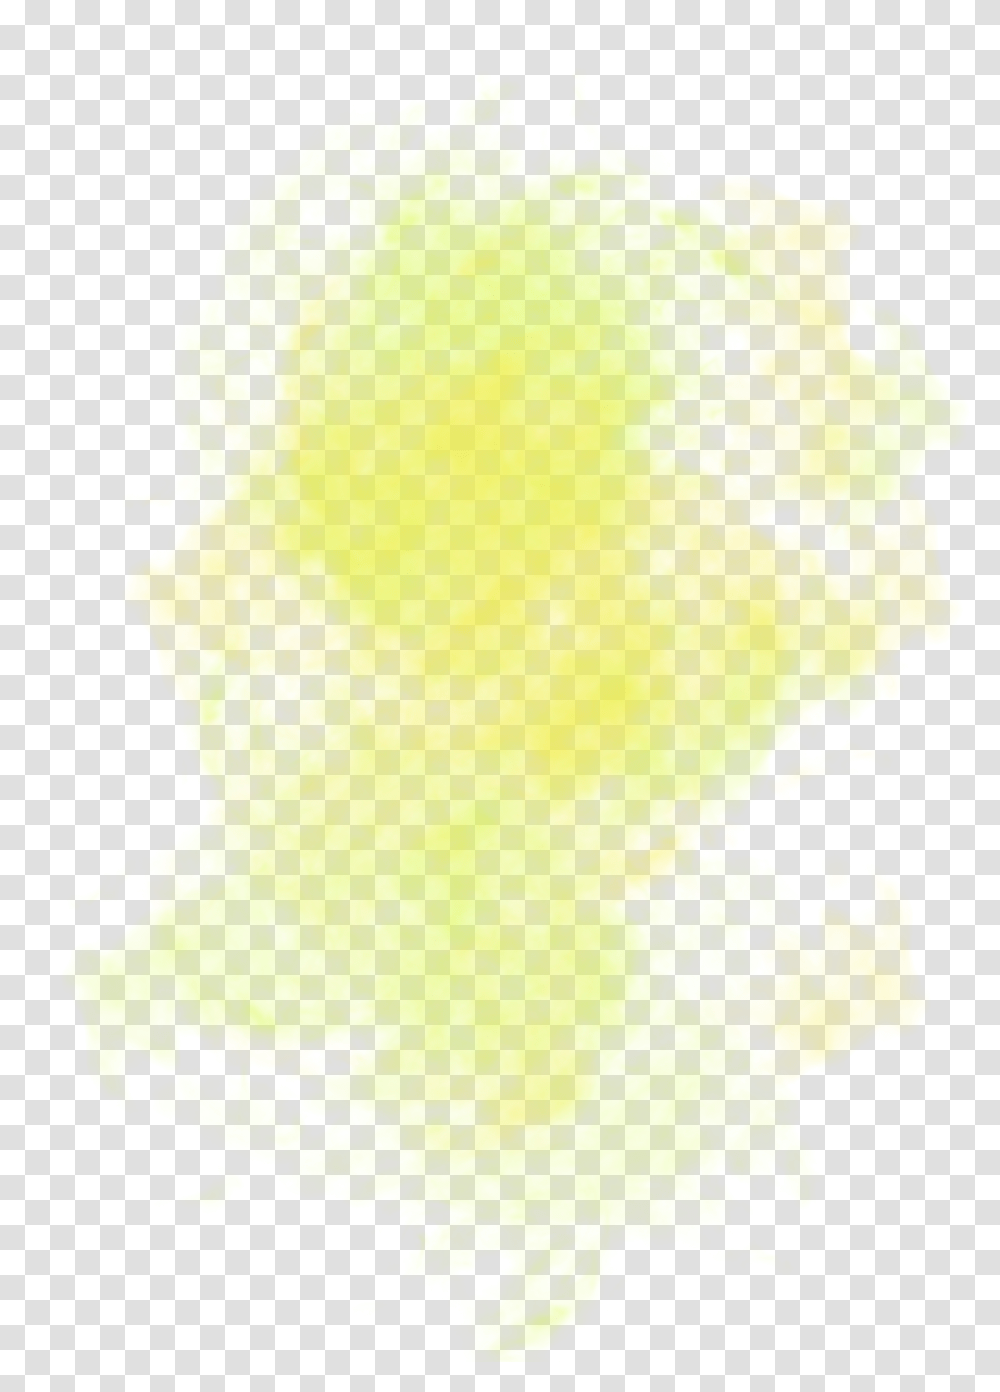 Light Yellow Euclidean Fog Yellow Fog, Silhouette, Fire Transparent Png